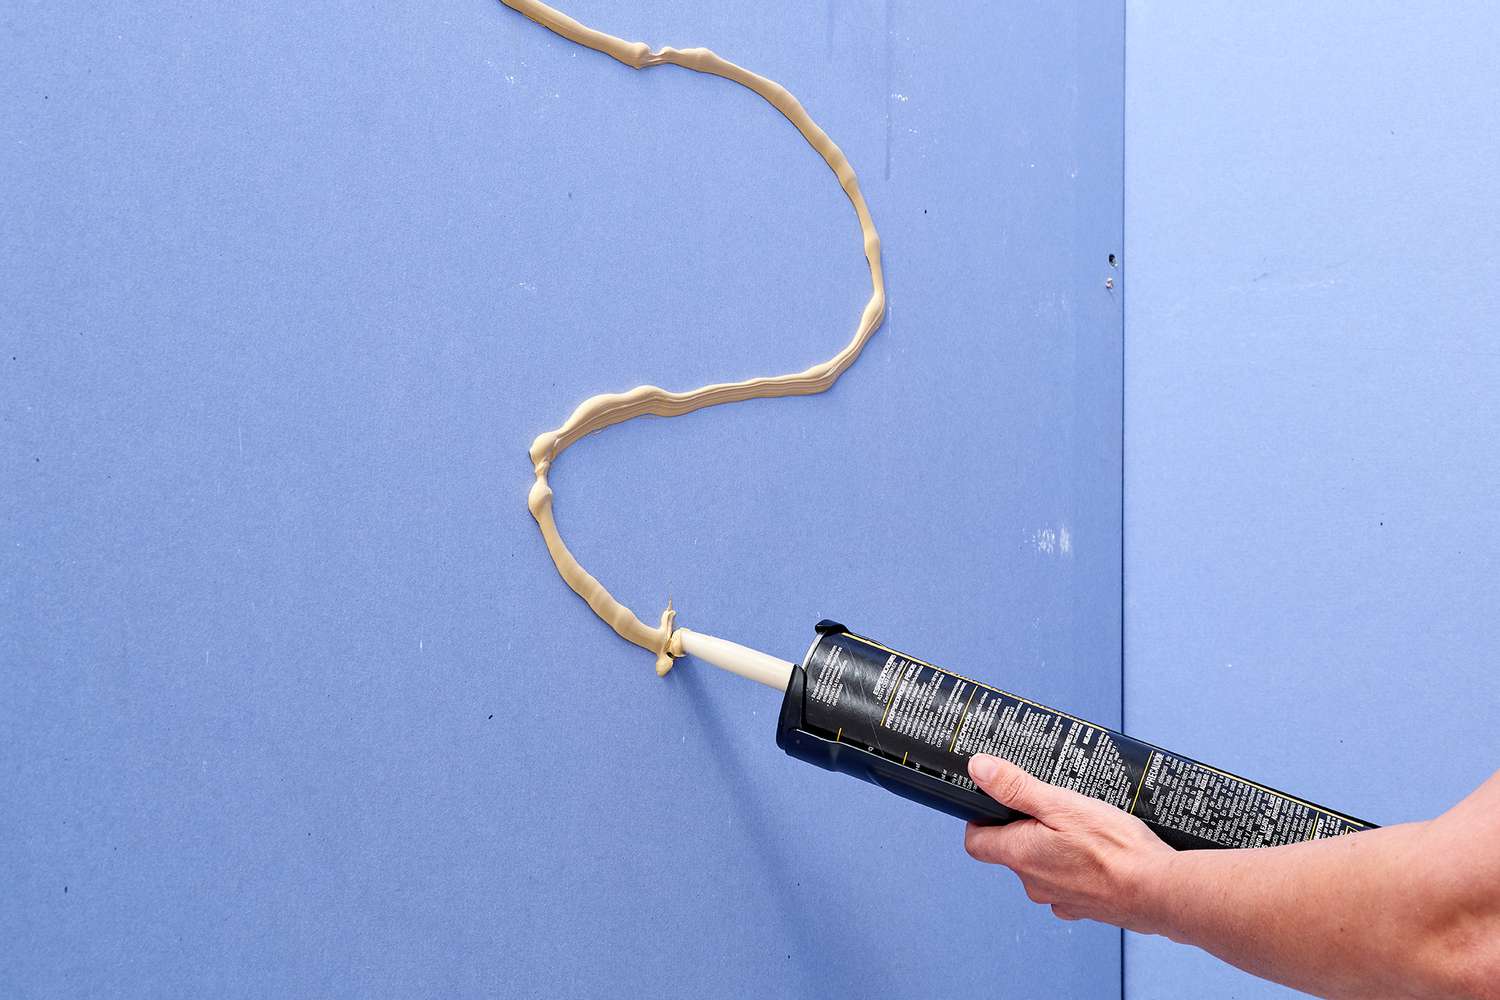 Cordones de masilla adhesiva añadidos a la pared trasera en zig-zag